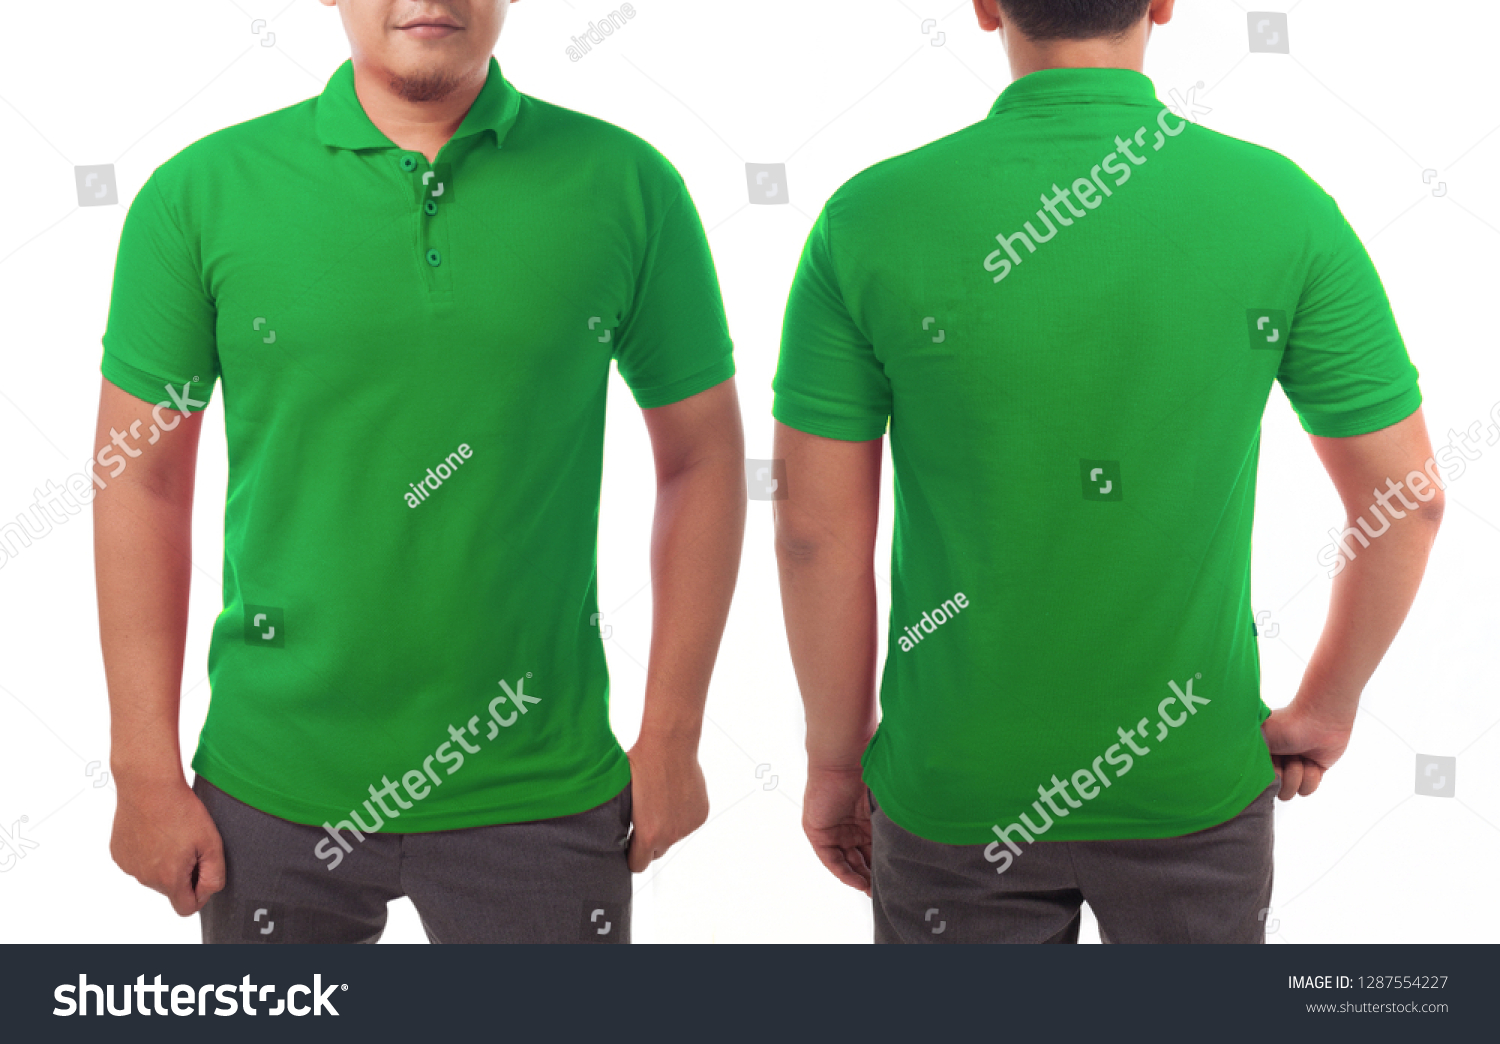 293,549 Green uniform Images, Stock Photos & Vectors | Shutterstock